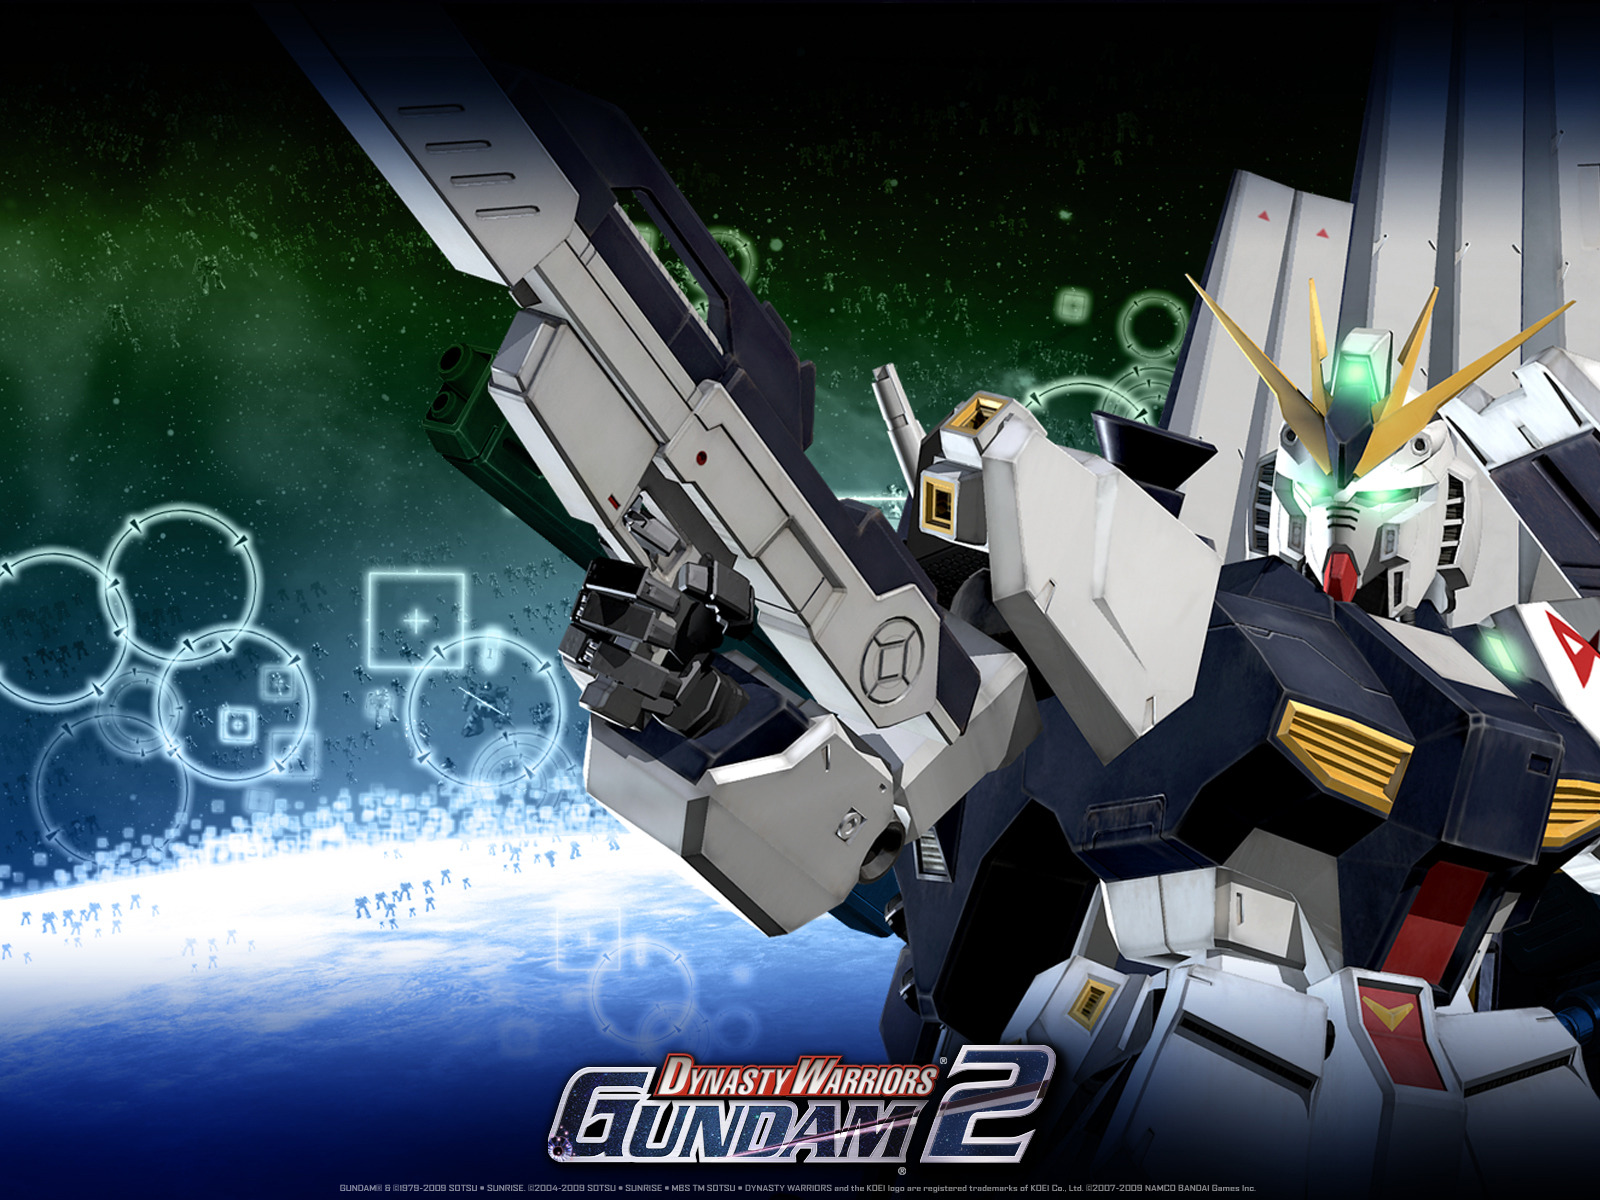 Nu Gundam Wallpaper - Dynasty Warriors Gundam 2 - HD Wallpaper 